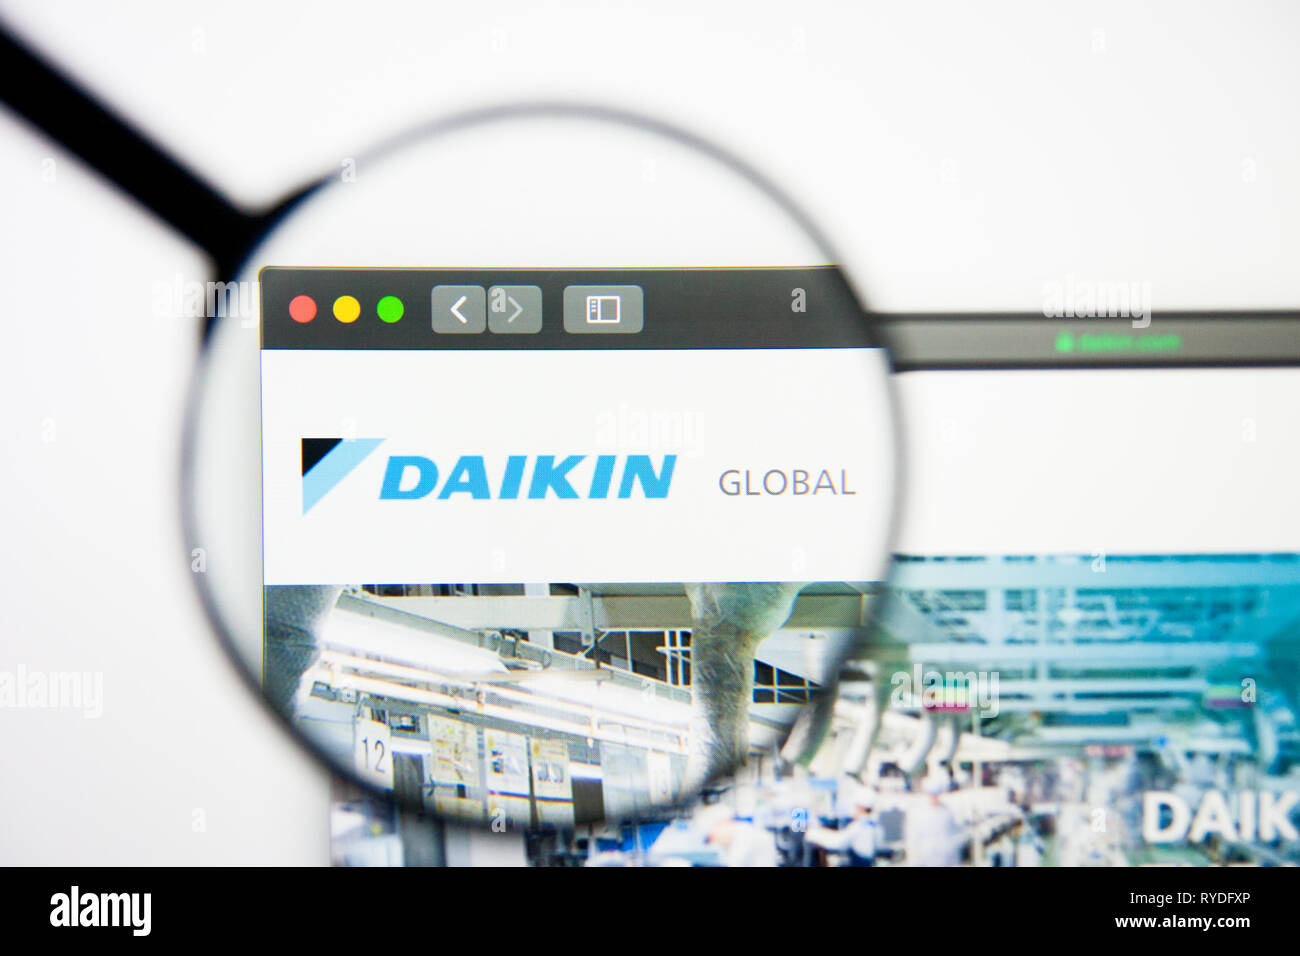 Los Angeles, Kalifornien, USA - 5. März 2019: Daikin Industries Homepage. Daikin Industries Logo sichtbar auf dem Display, Illustrative Stockfoto